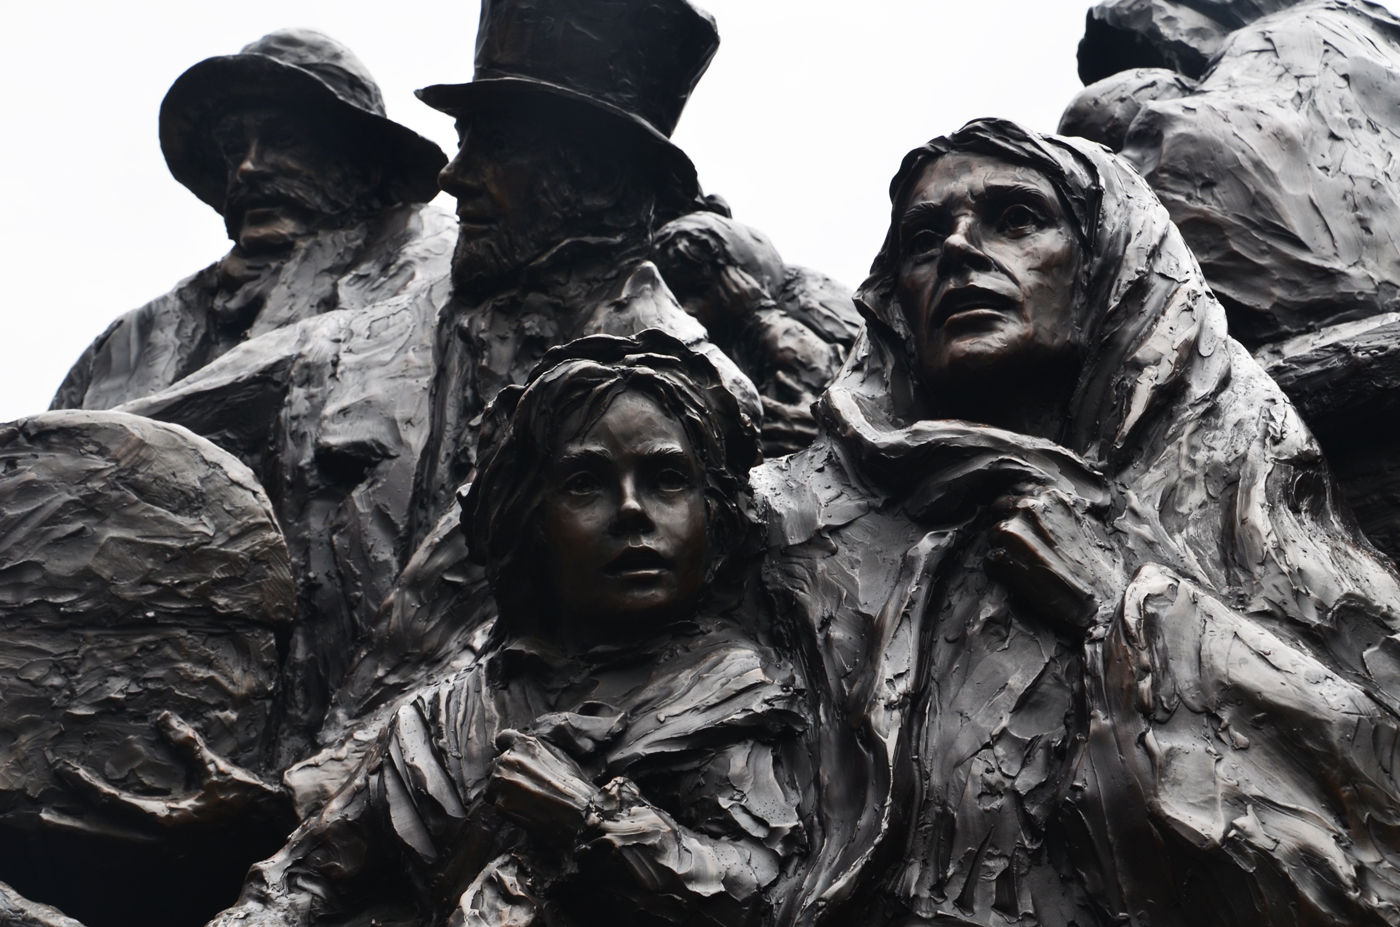 Irish Famine Memorial